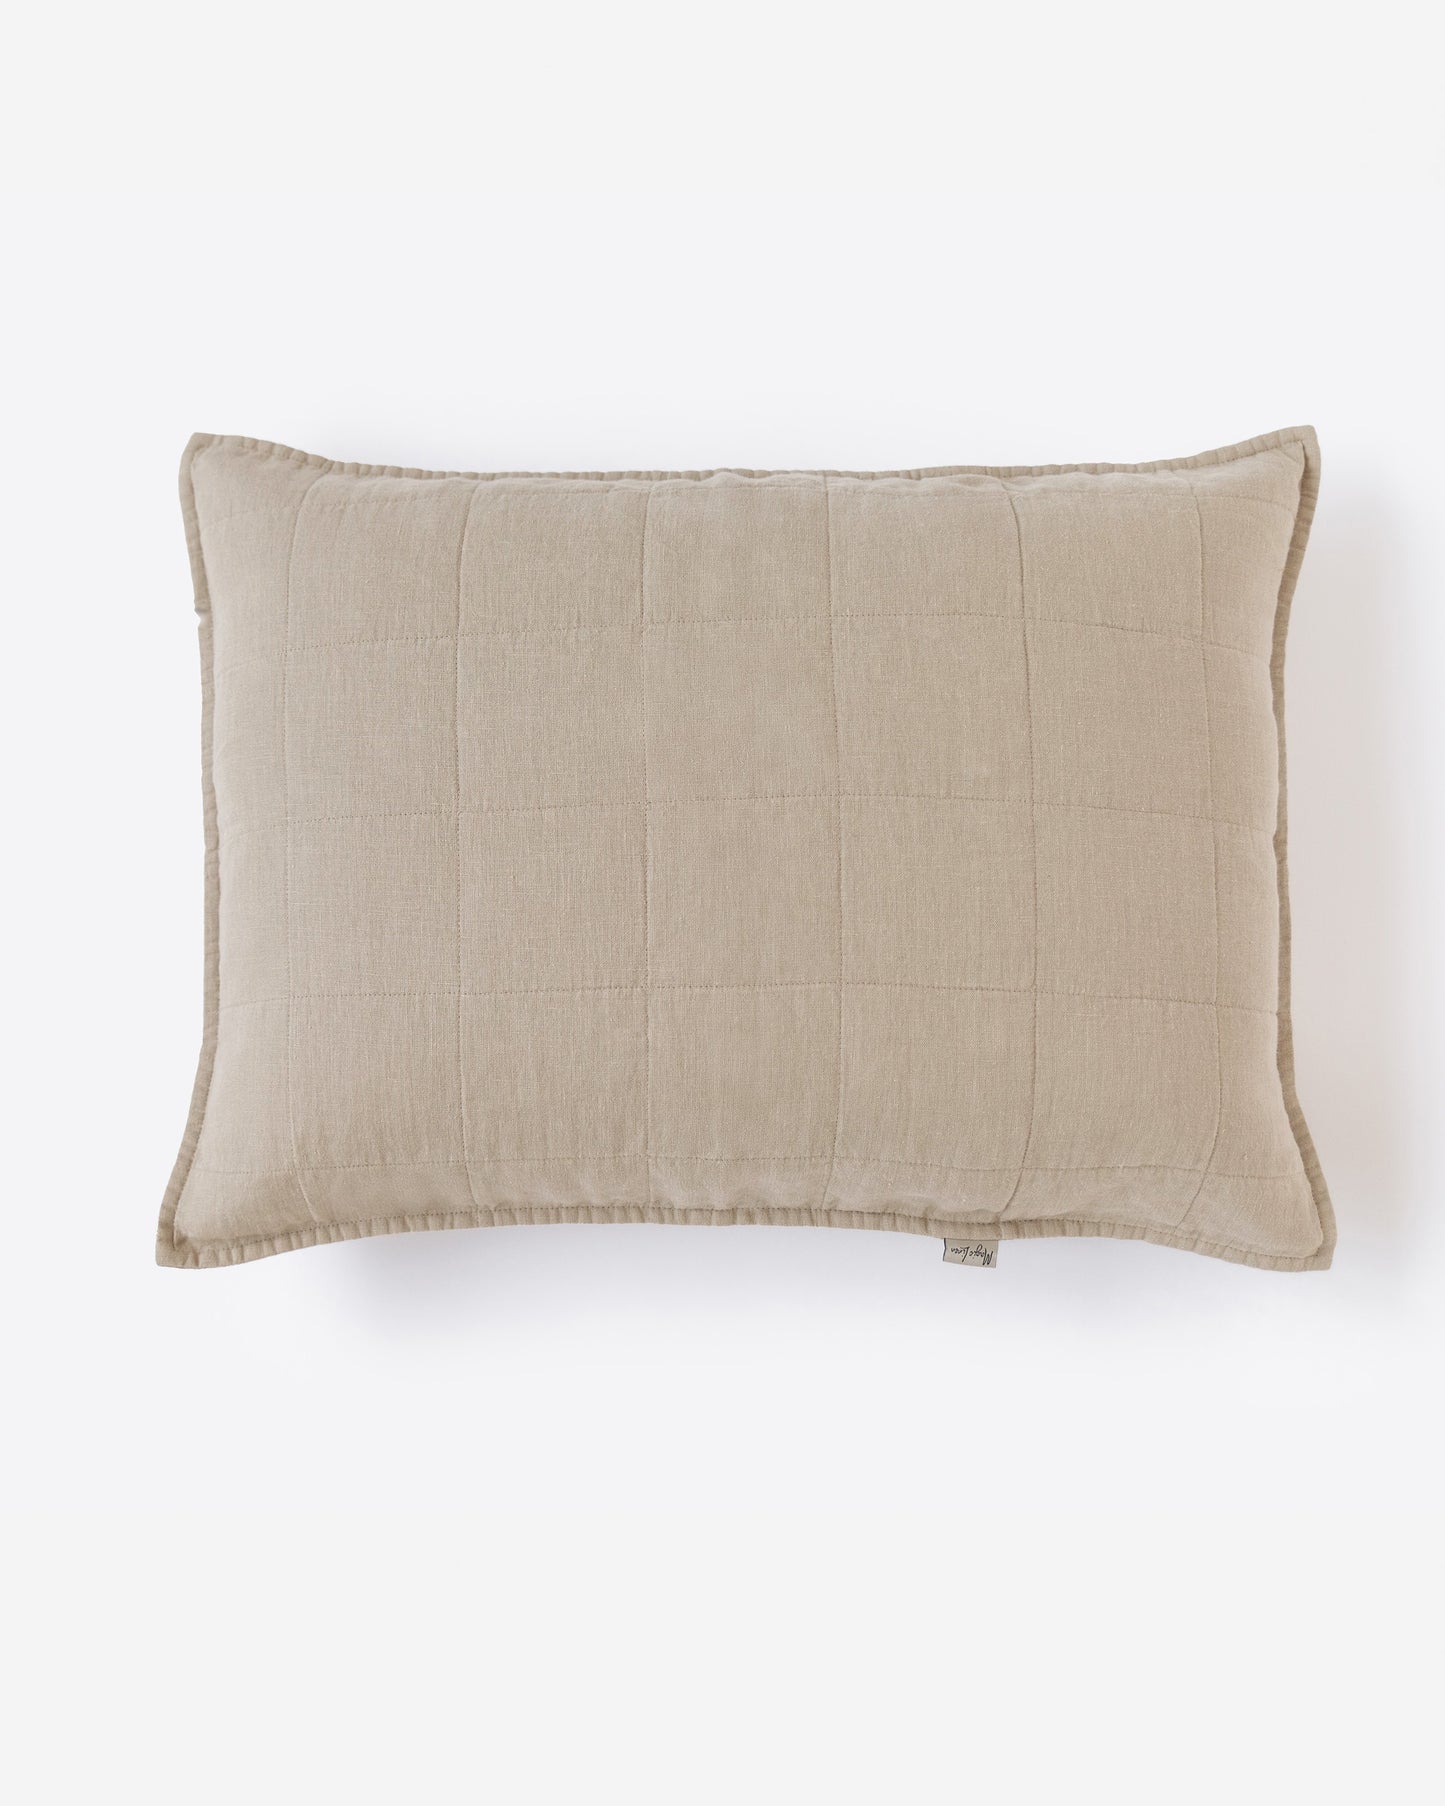 Quilted linen pillowcase set of 2 - MagicLinen